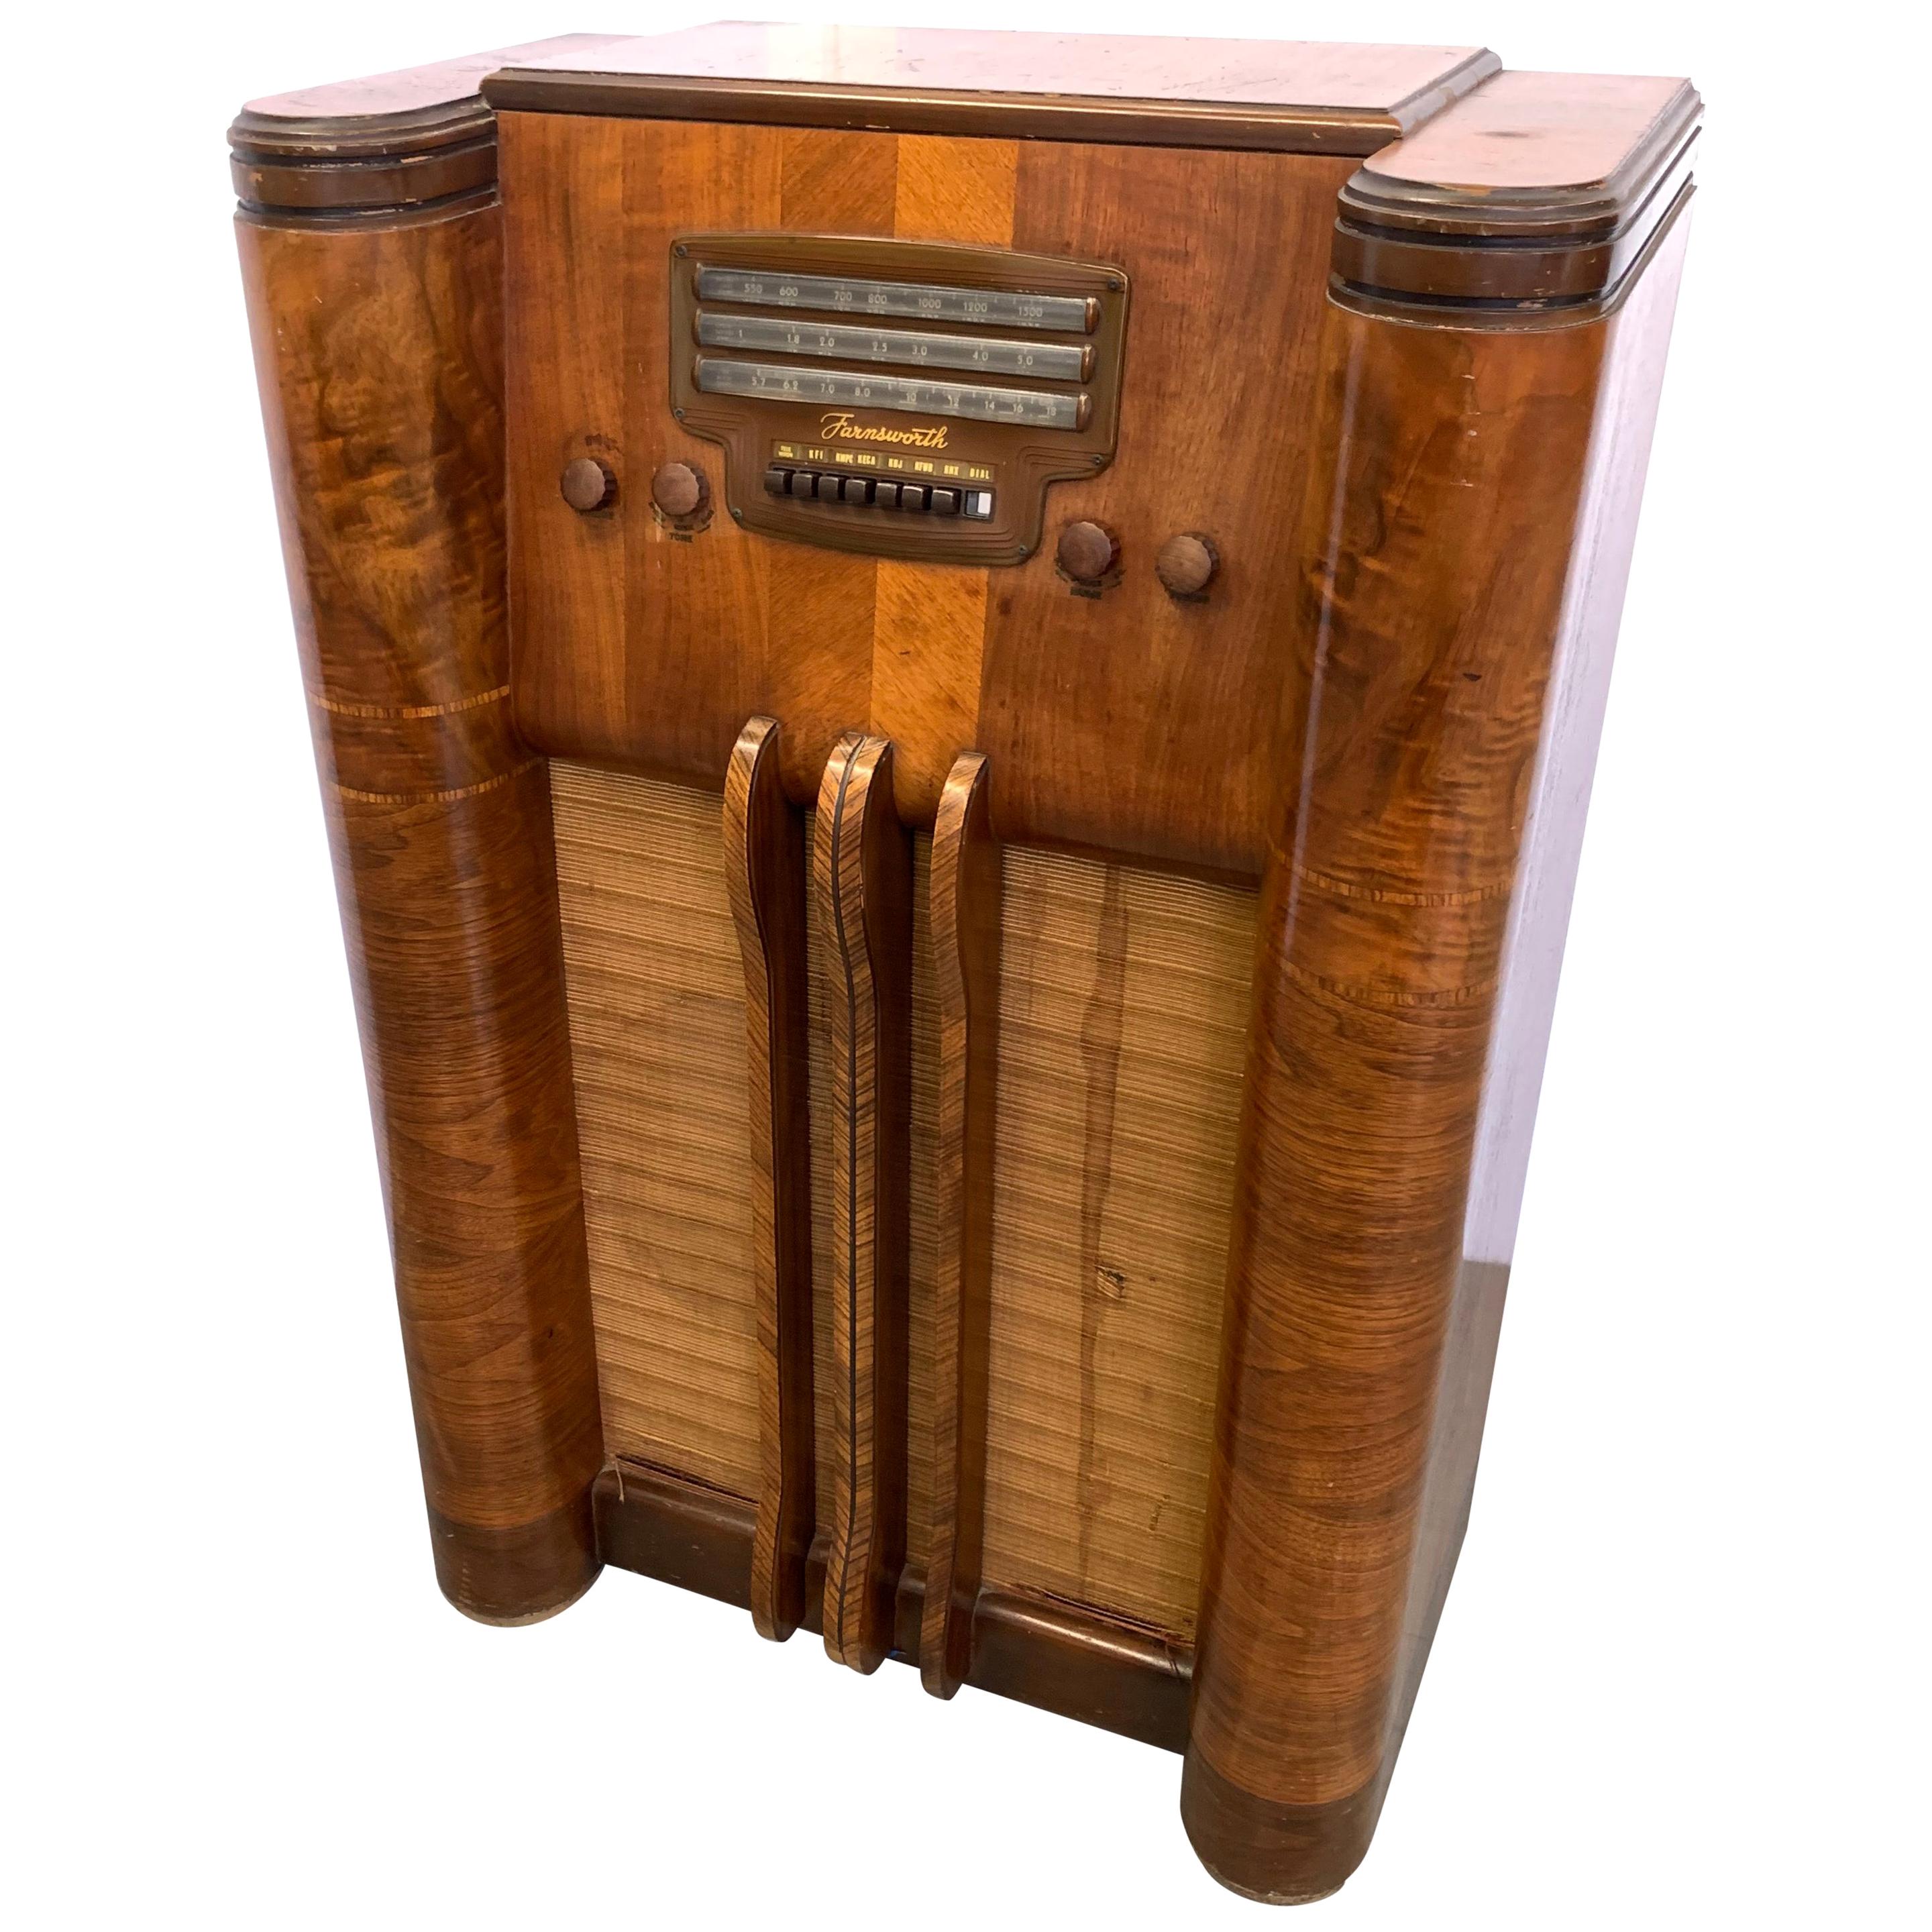 Dekoratives Bodenradio von Farnsworth Television & Radio Corp:: 1940
Es sind keine elektronischen Teile erhalten:: hauptsächlich zu dekorativen Zwecken. 

Philo Taylor Farnsworth (19. August 1906 - 11. März 1971) war ein amerikanischer Erfinder und